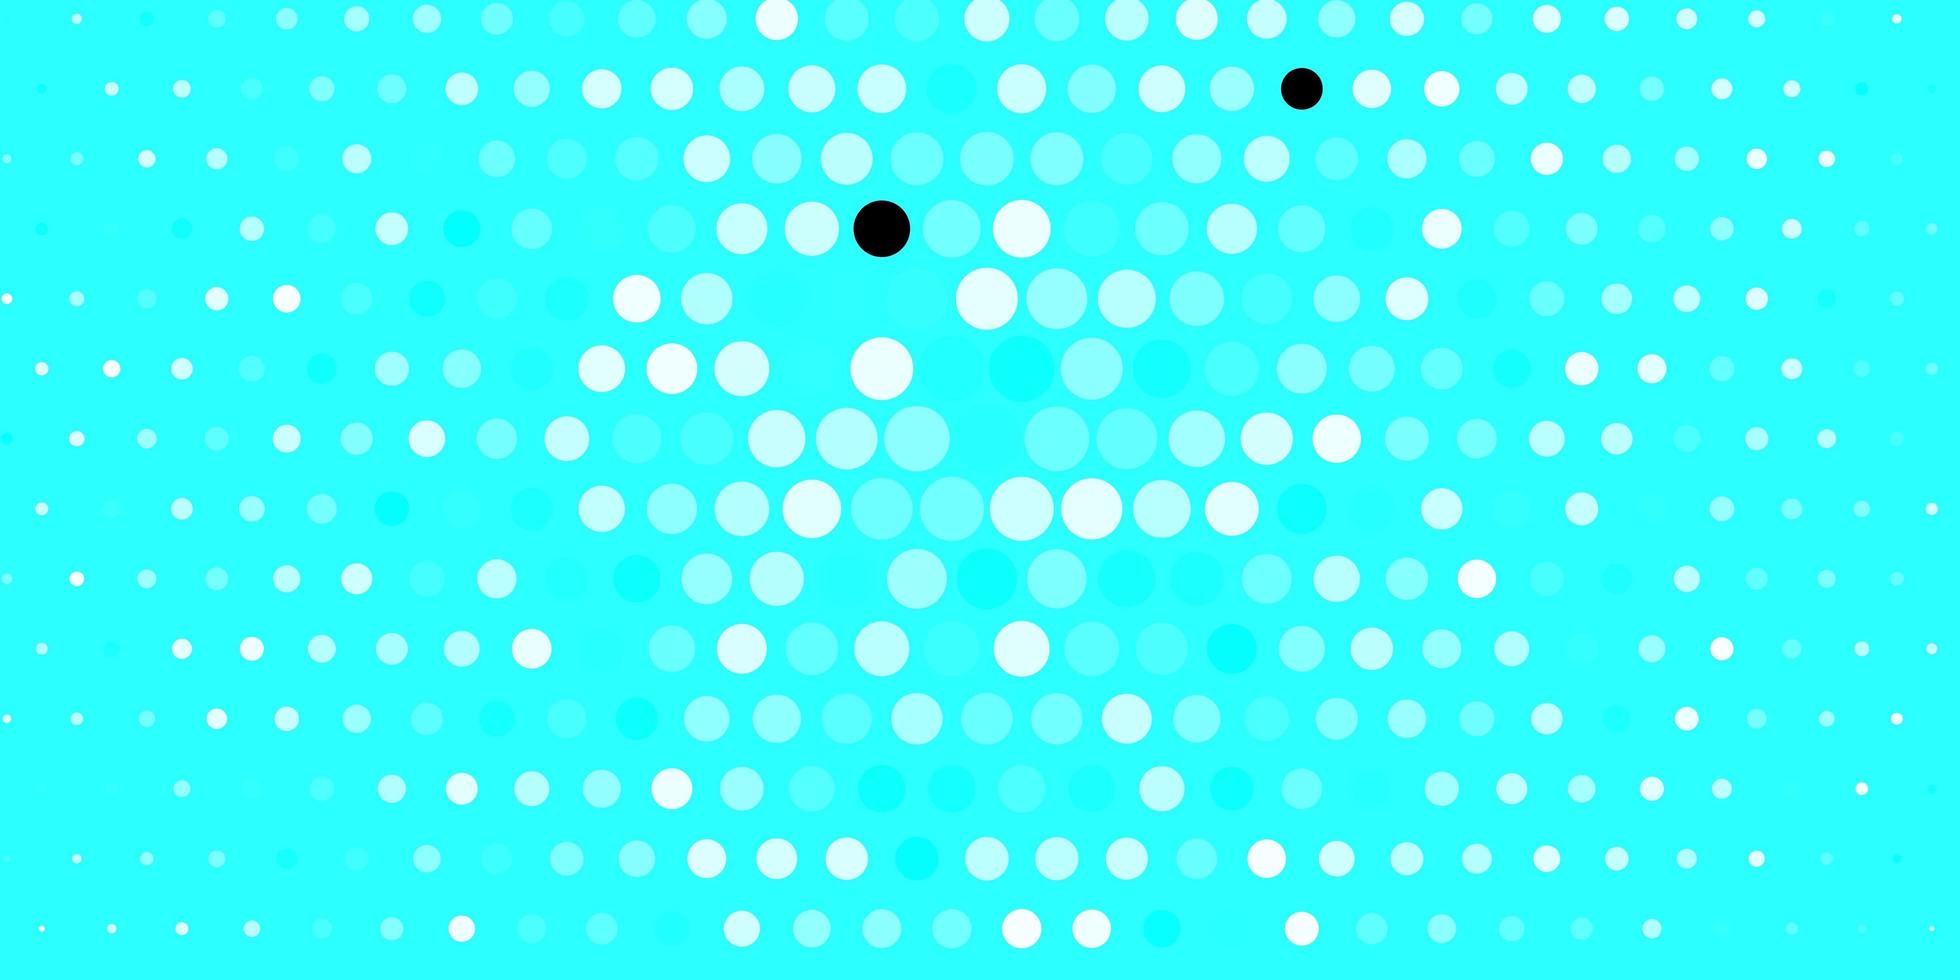 textura de vetor azul escuro com discos design decorativo abstrato em estilo gradiente com bolhas novo modelo para um brand book